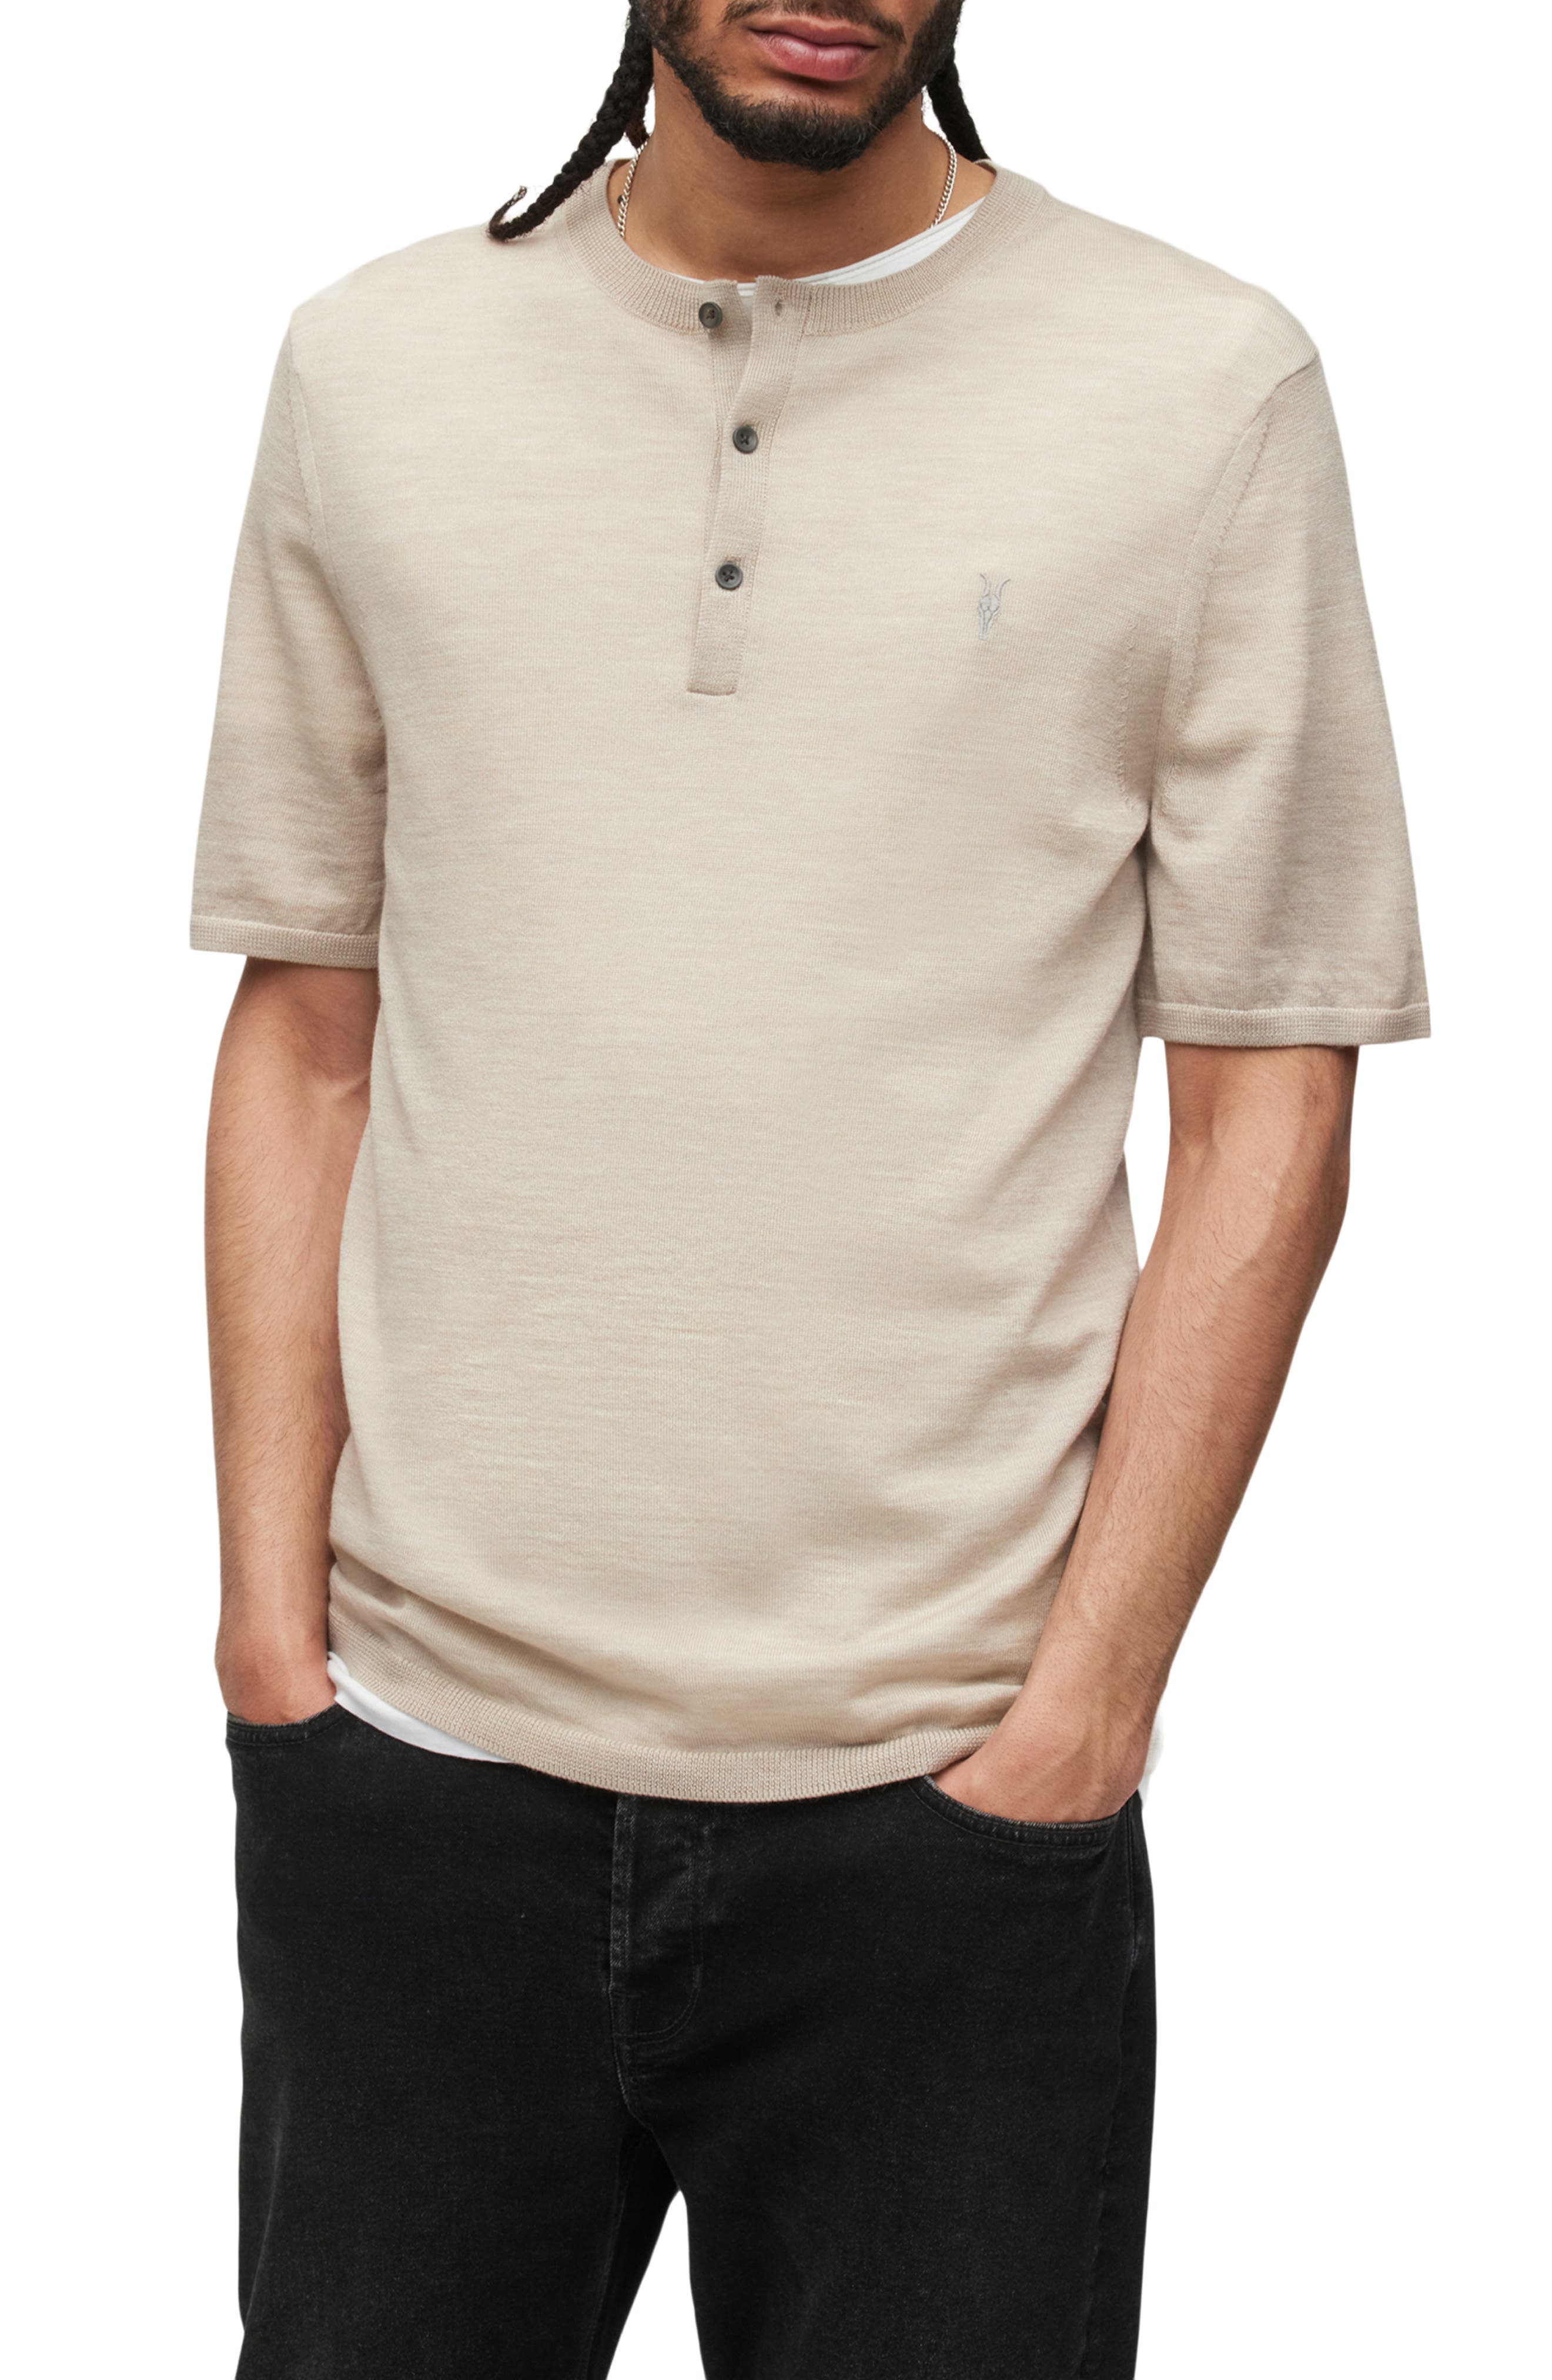 Details about   Rag & Bone Men's Slim Fit Short Sleeve Henley T-Shirt MSRP $125 